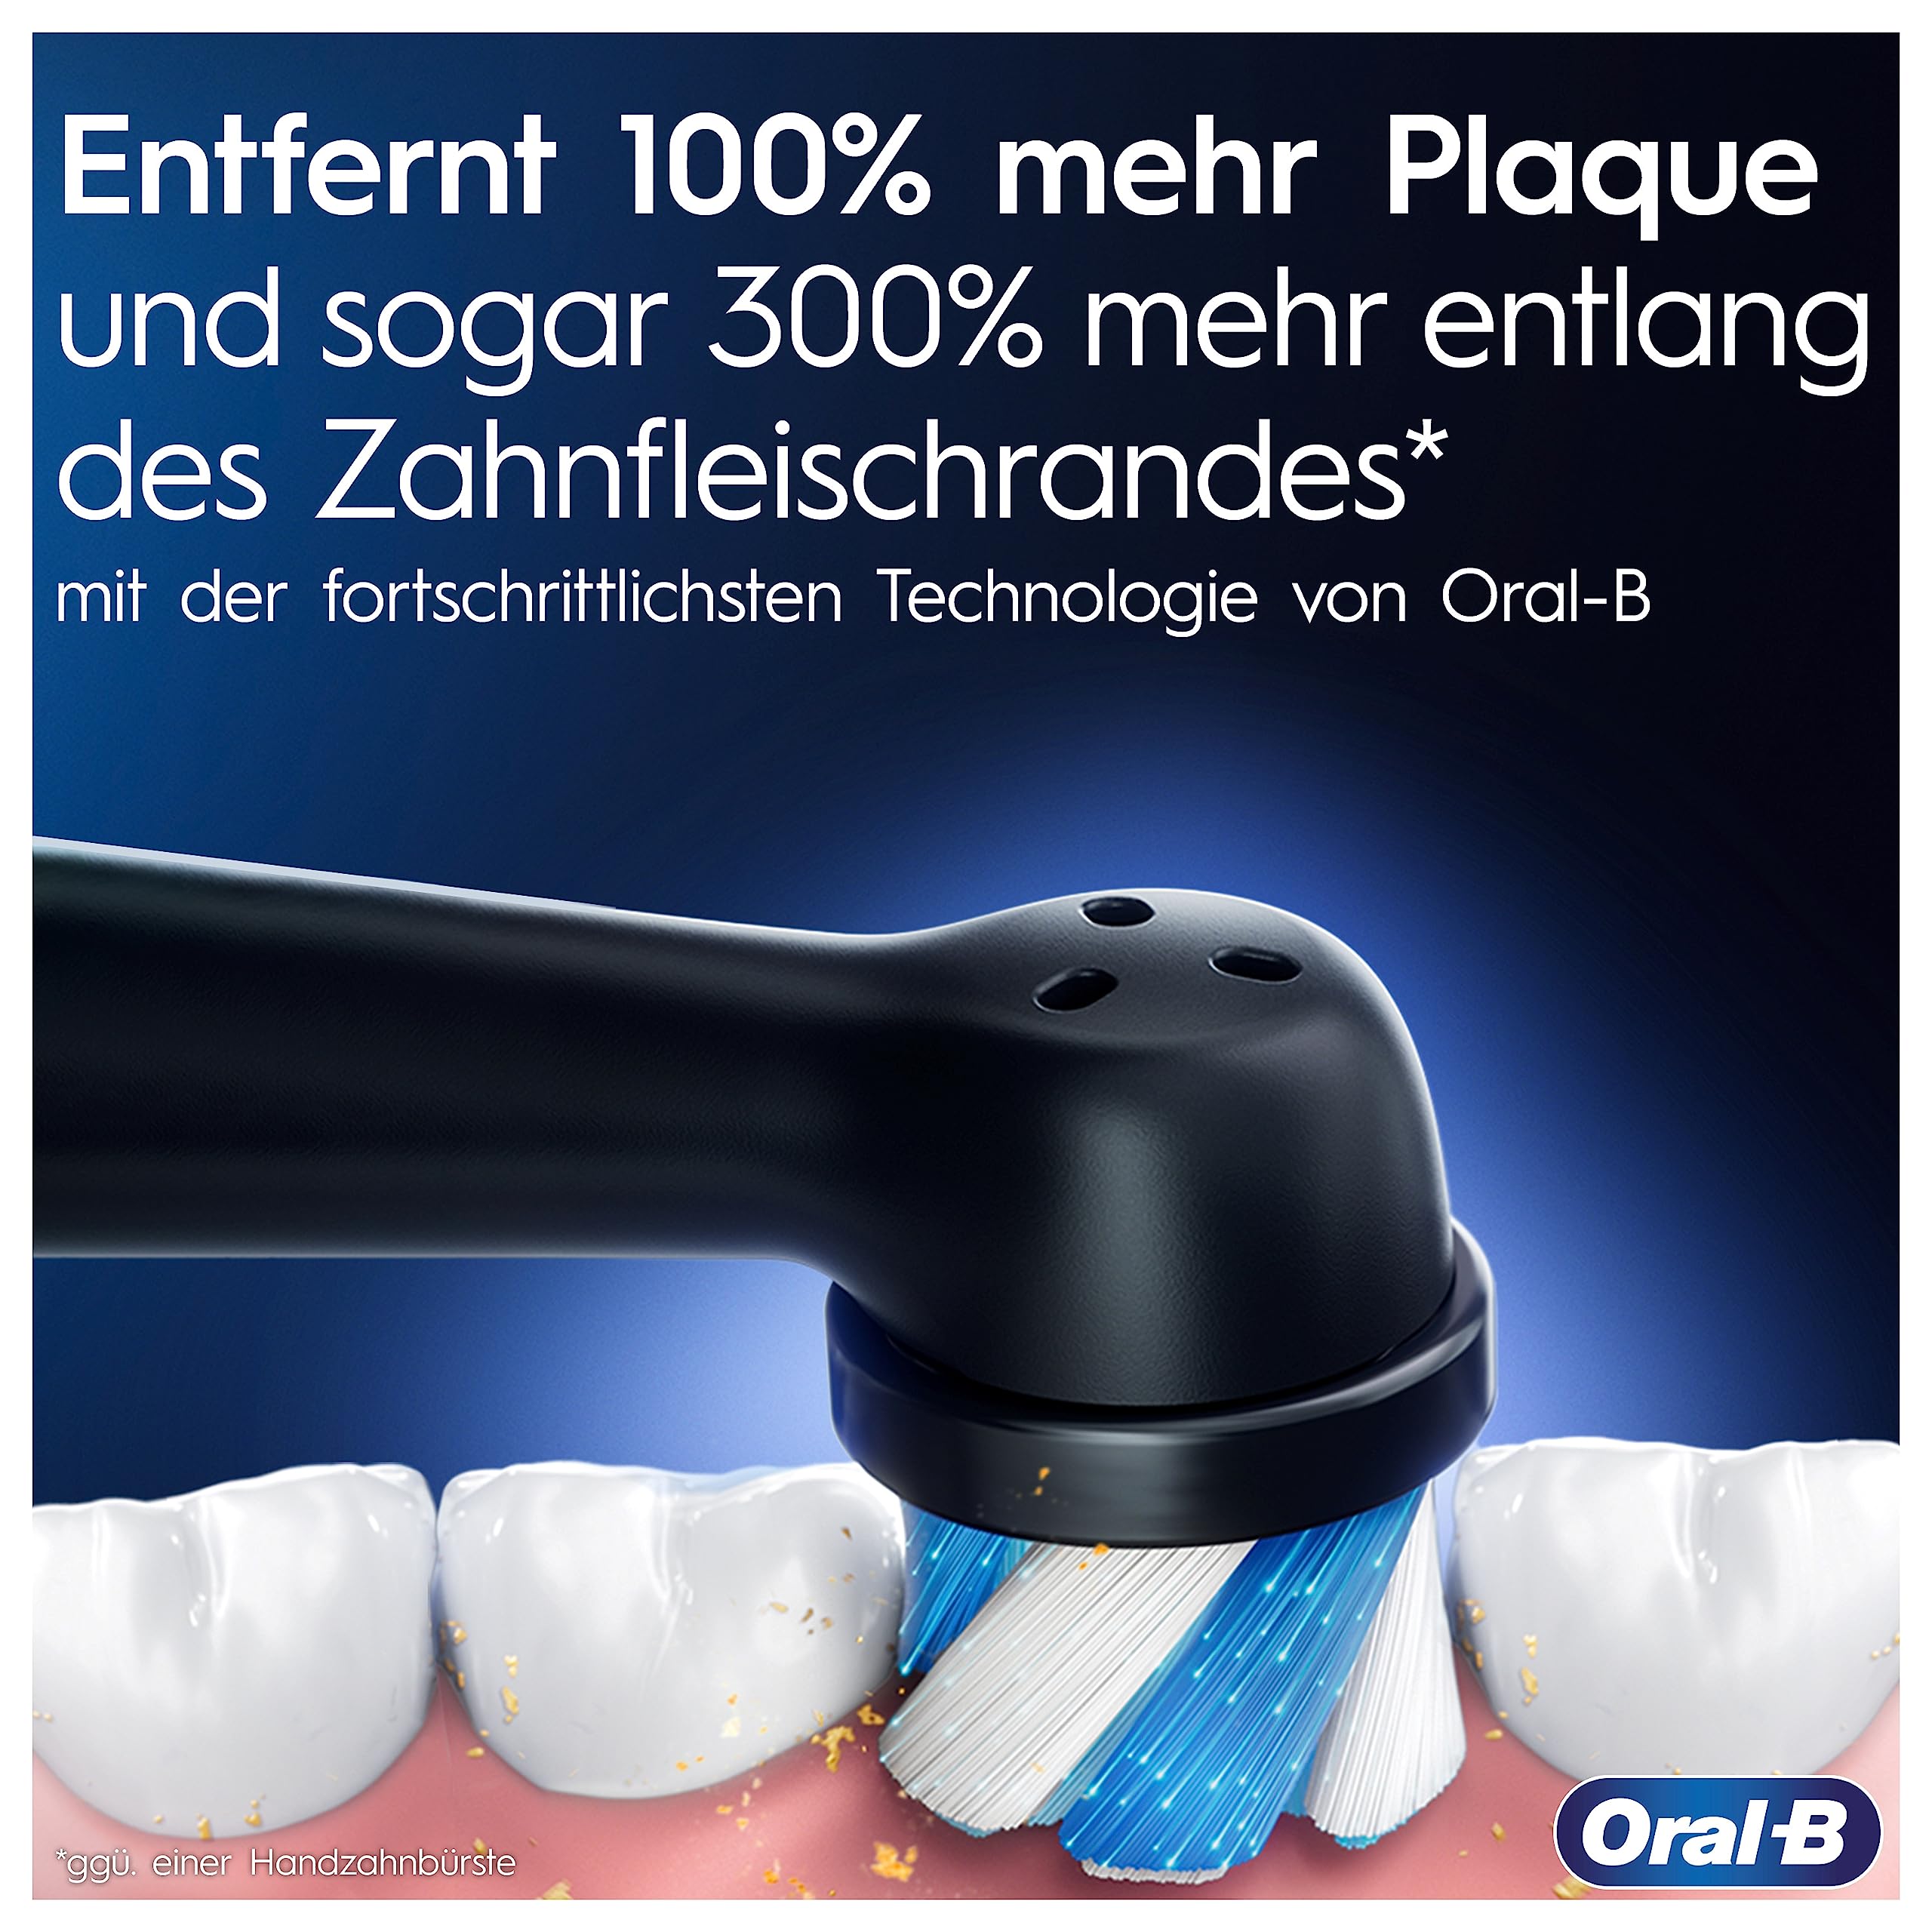 Oral-B iO Series 9 Plus Edition Elektrische Zahnbürste/Electric Toothbrush, PLUS 3 Aufsteckbürsten inkl. Whitening, Magnet-Etui, 7 Putzmodi, recycelbare Verpackung, Geschenk Mann/Frau, black